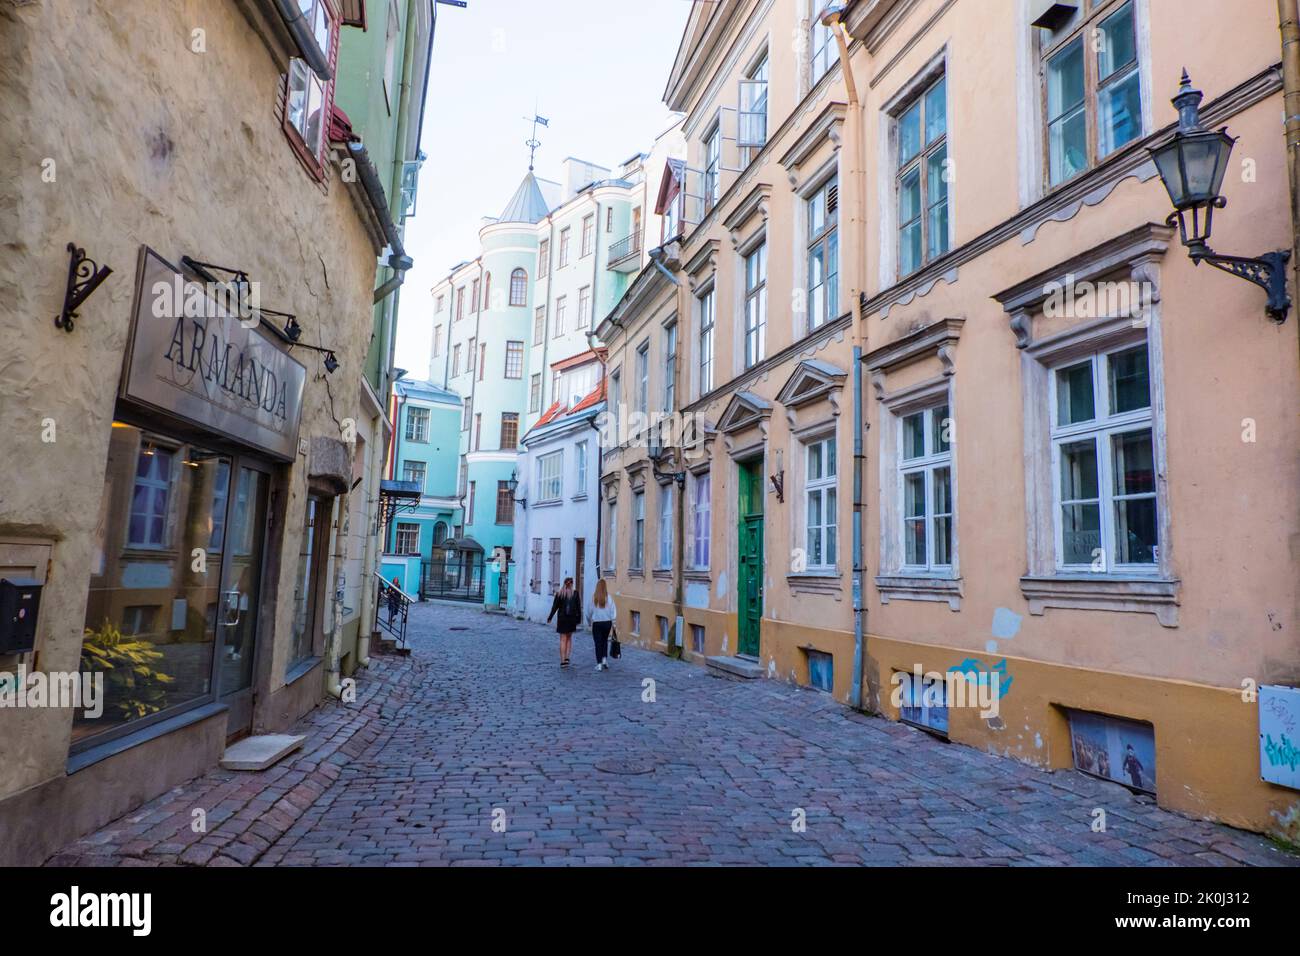 Muurivähe tänav, old town, Tallinn, Estonia Stock Photo